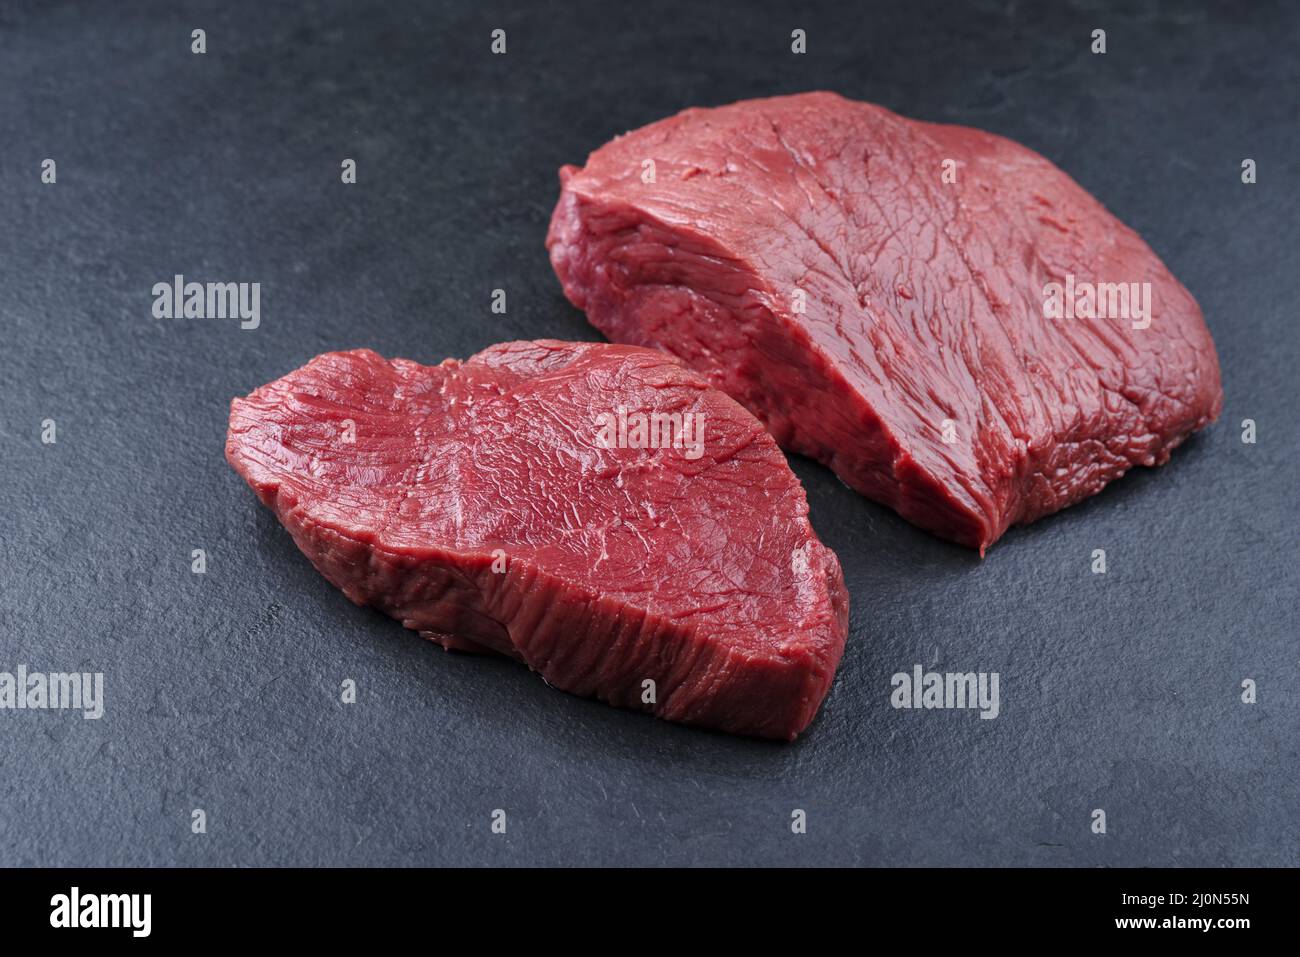 Morceau de steak et tranches de bœuf de bison vieilli et sec brut offert en gros plan sur fond noir avec espace de copie Banque D'Images